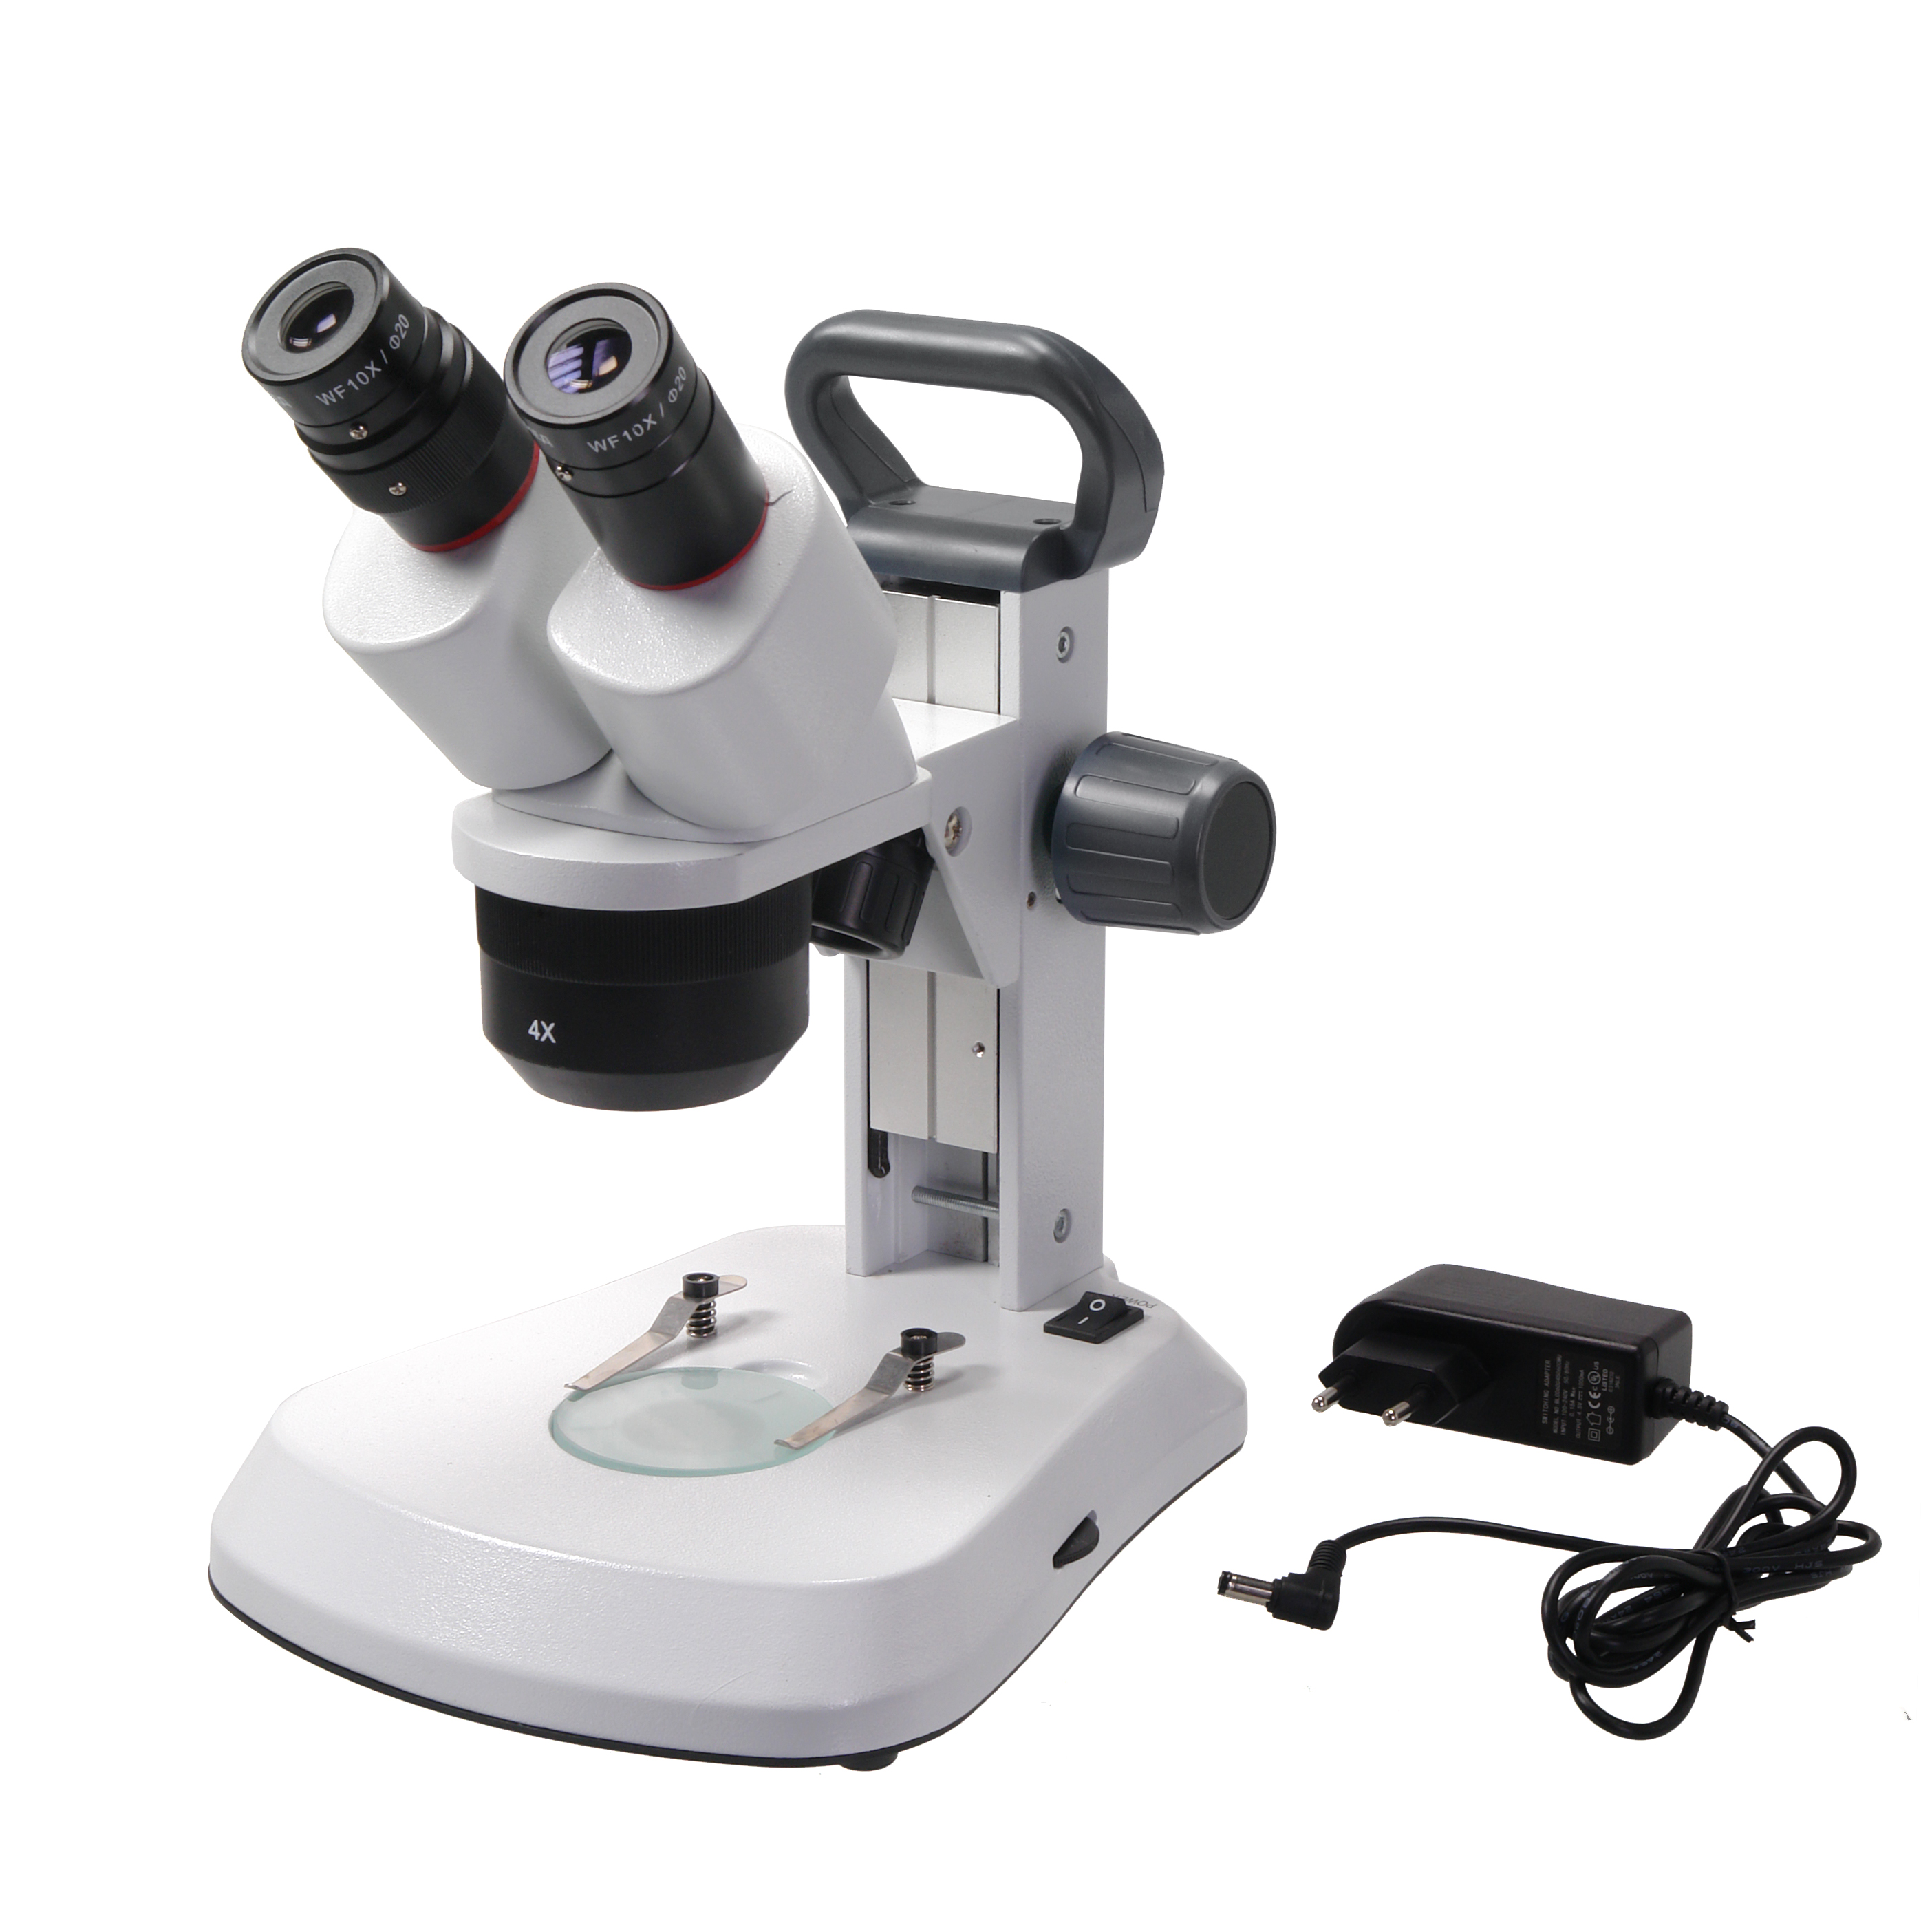 Микроскоп стерео Микромед МС-1 вар.1C (1х/2х/4х) Led купить по оптимальной цене,  доставка по России, гарантия качества